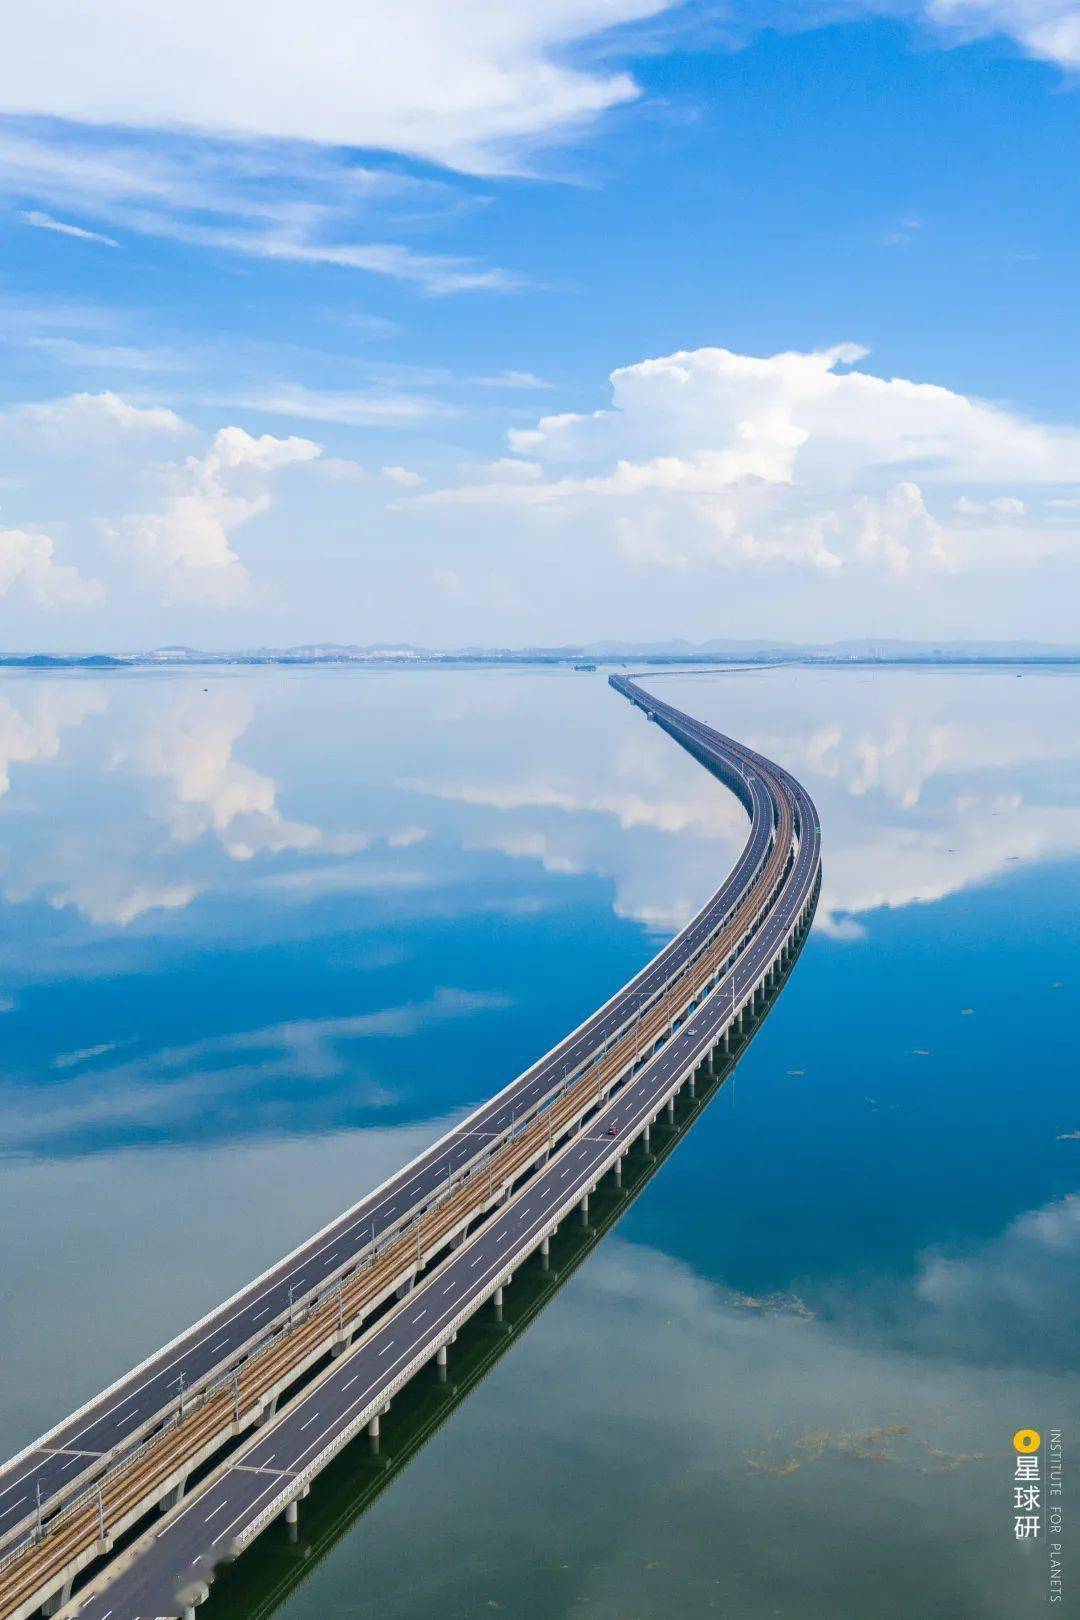 进入高淳区的石臼湖特大桥| 摄影师@熊伟当"水上列车"飞速划越天空之